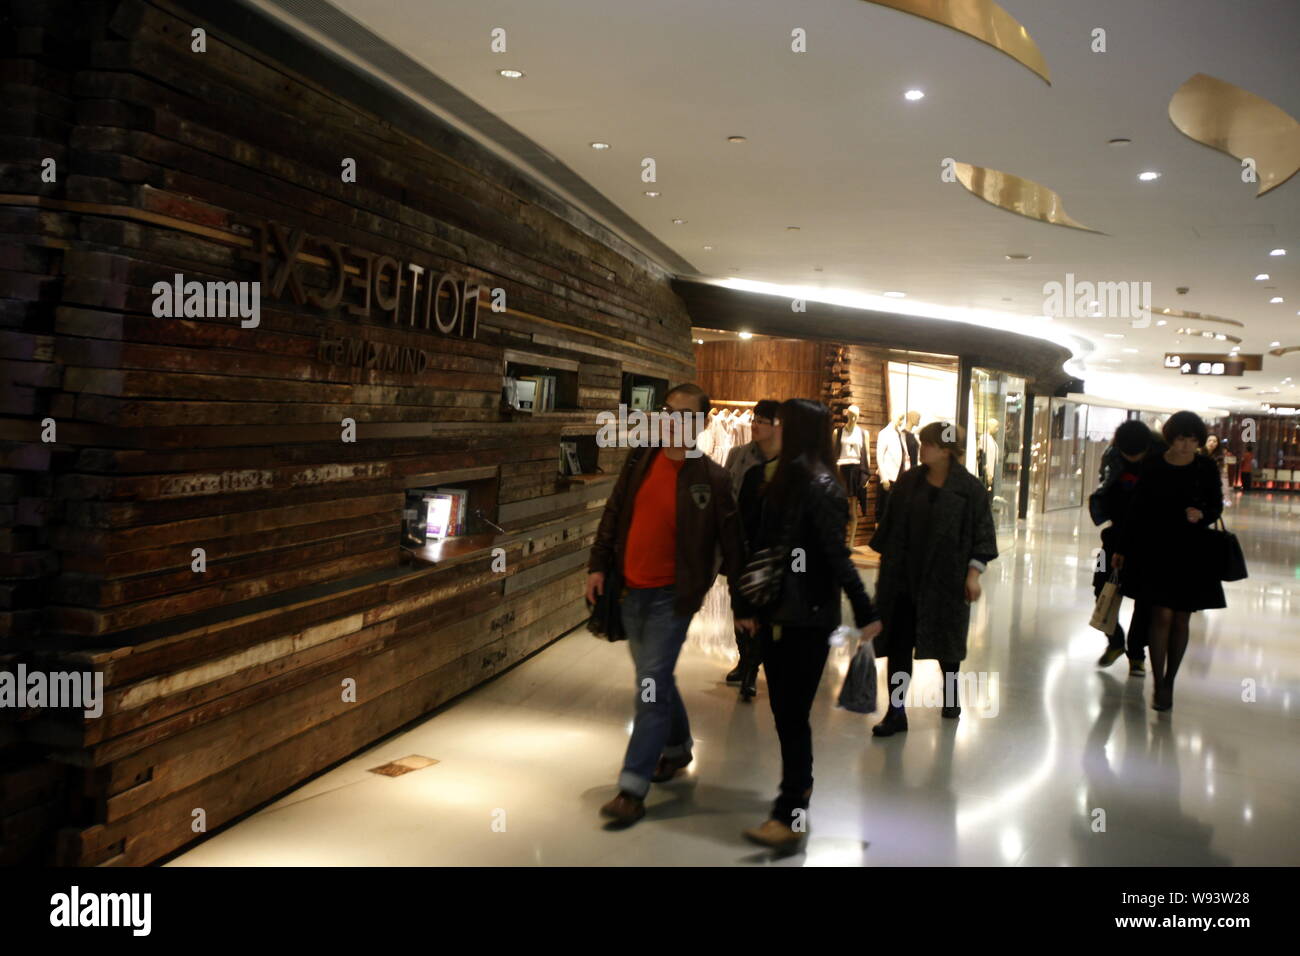 Gli amanti dello shopping a piedi passato un esclusivo negozio di porcellane leader etichetta indipendente di eccezione in Cina a Shanghai, 24 marzo 2013. Chinas prima signora Peng Liyuan Foto Stock